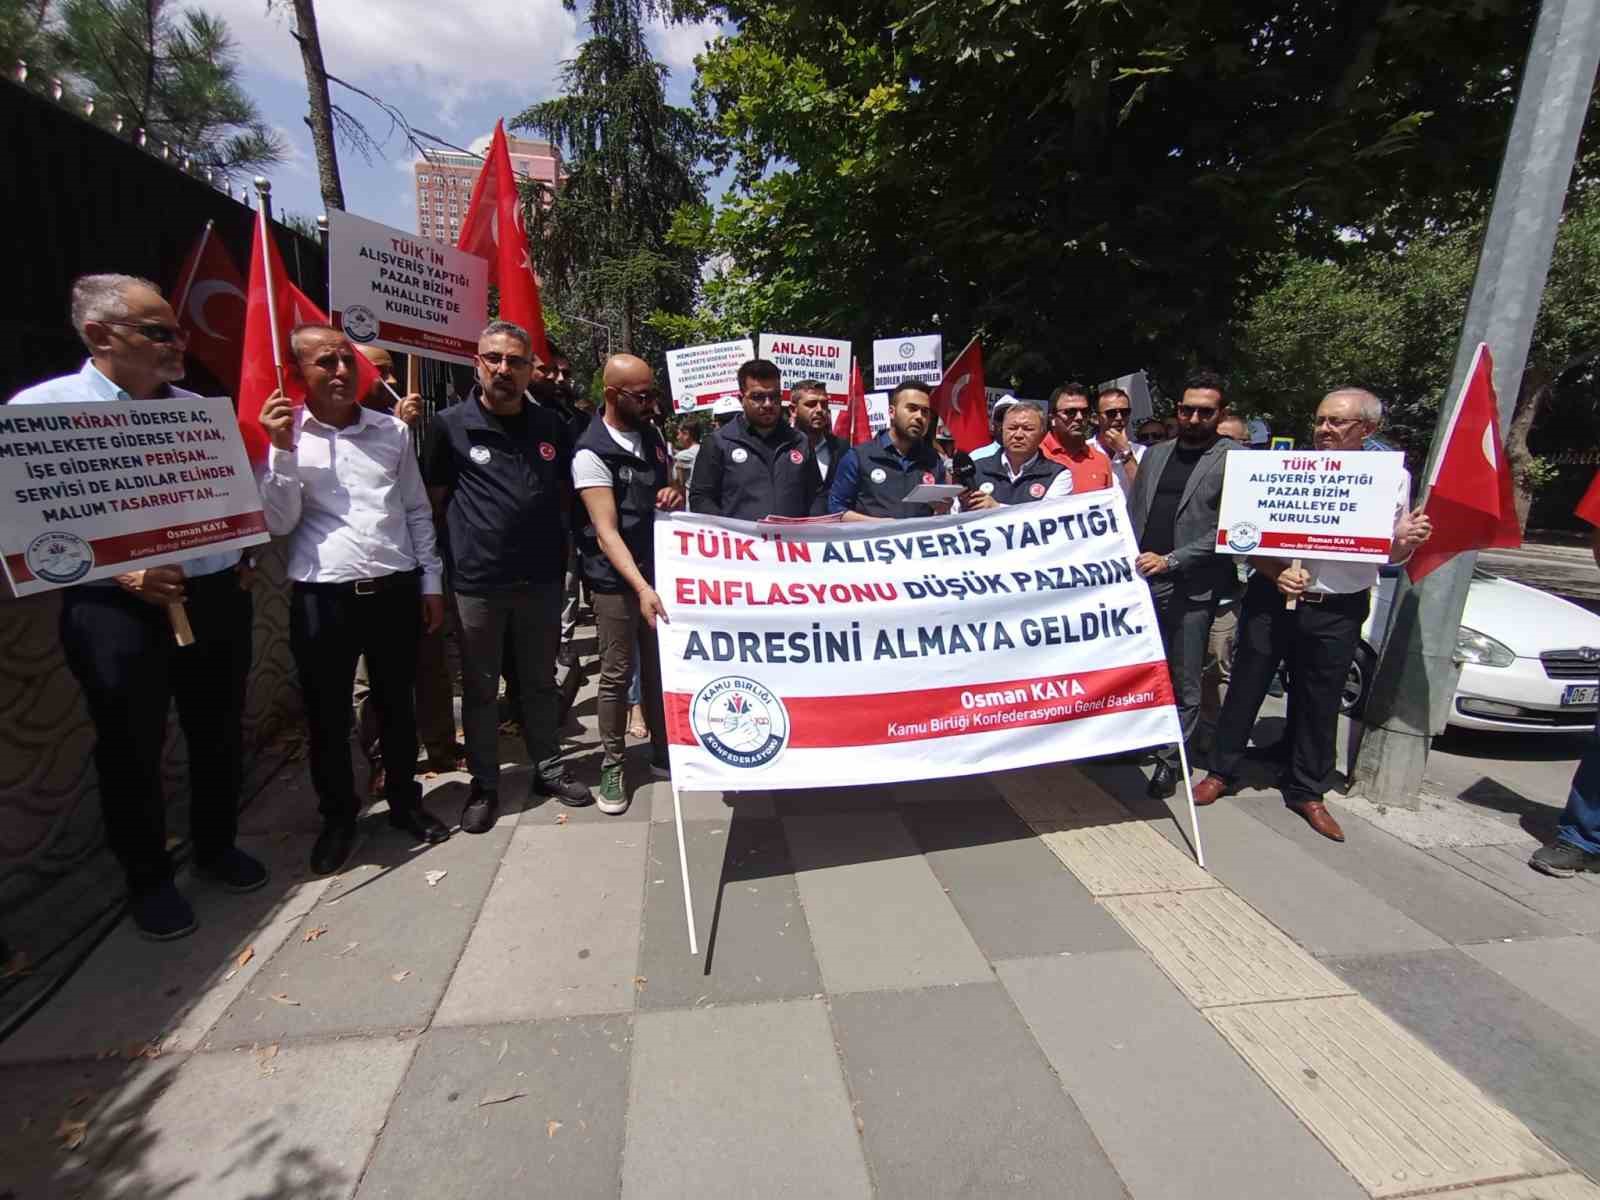 Kamu Birliği Konfederasyonu’ndan TÜİK önünde eylem
